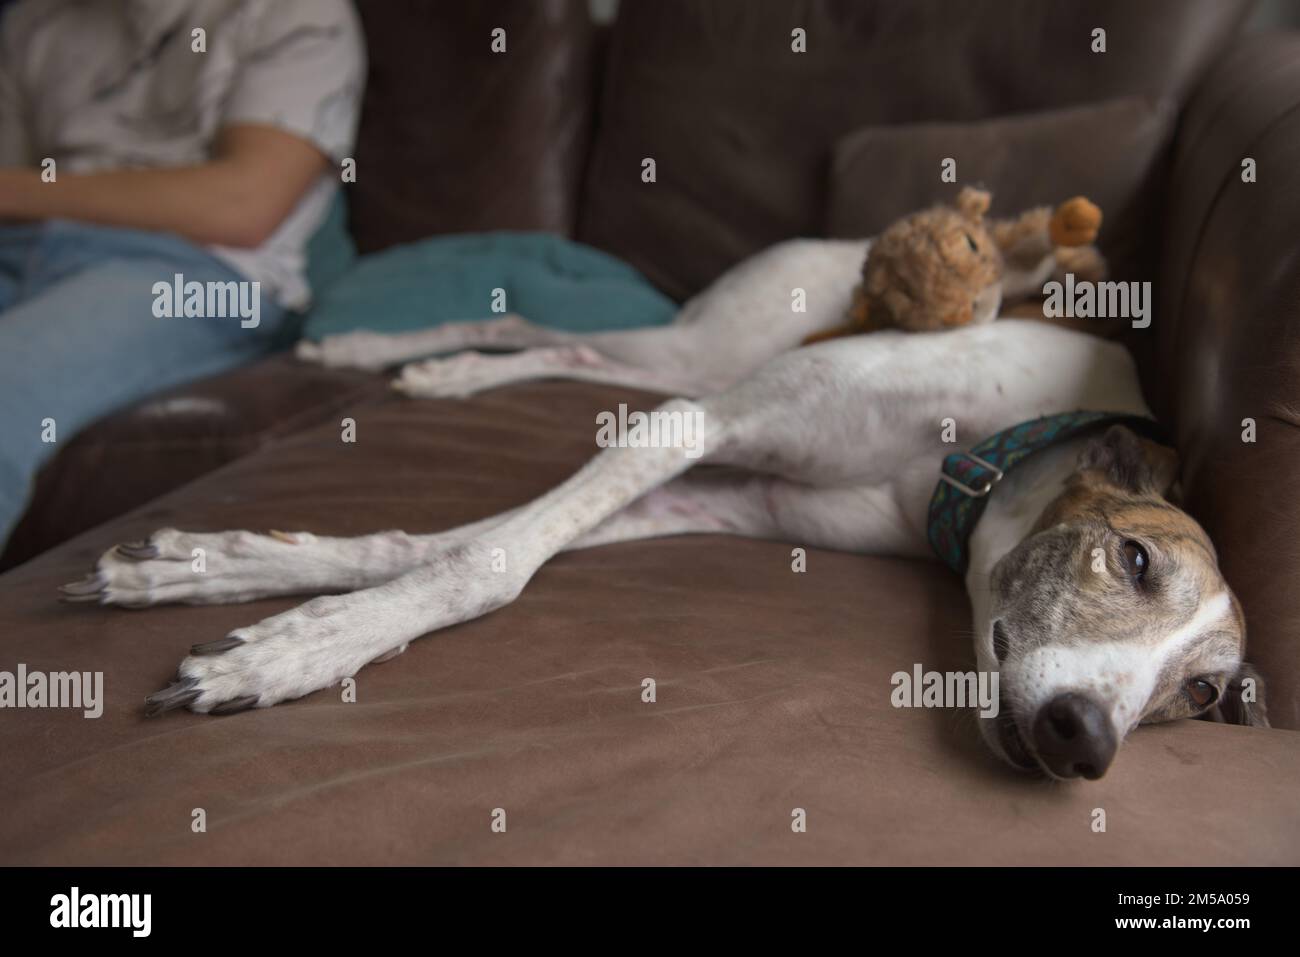 Greyhound perro squints ojos siesta en sofá de cuero suave. Joven dueño masculino se sienta en el fondo, también se relaja en el sofá. Cálido interior doméstico. Foto de stock